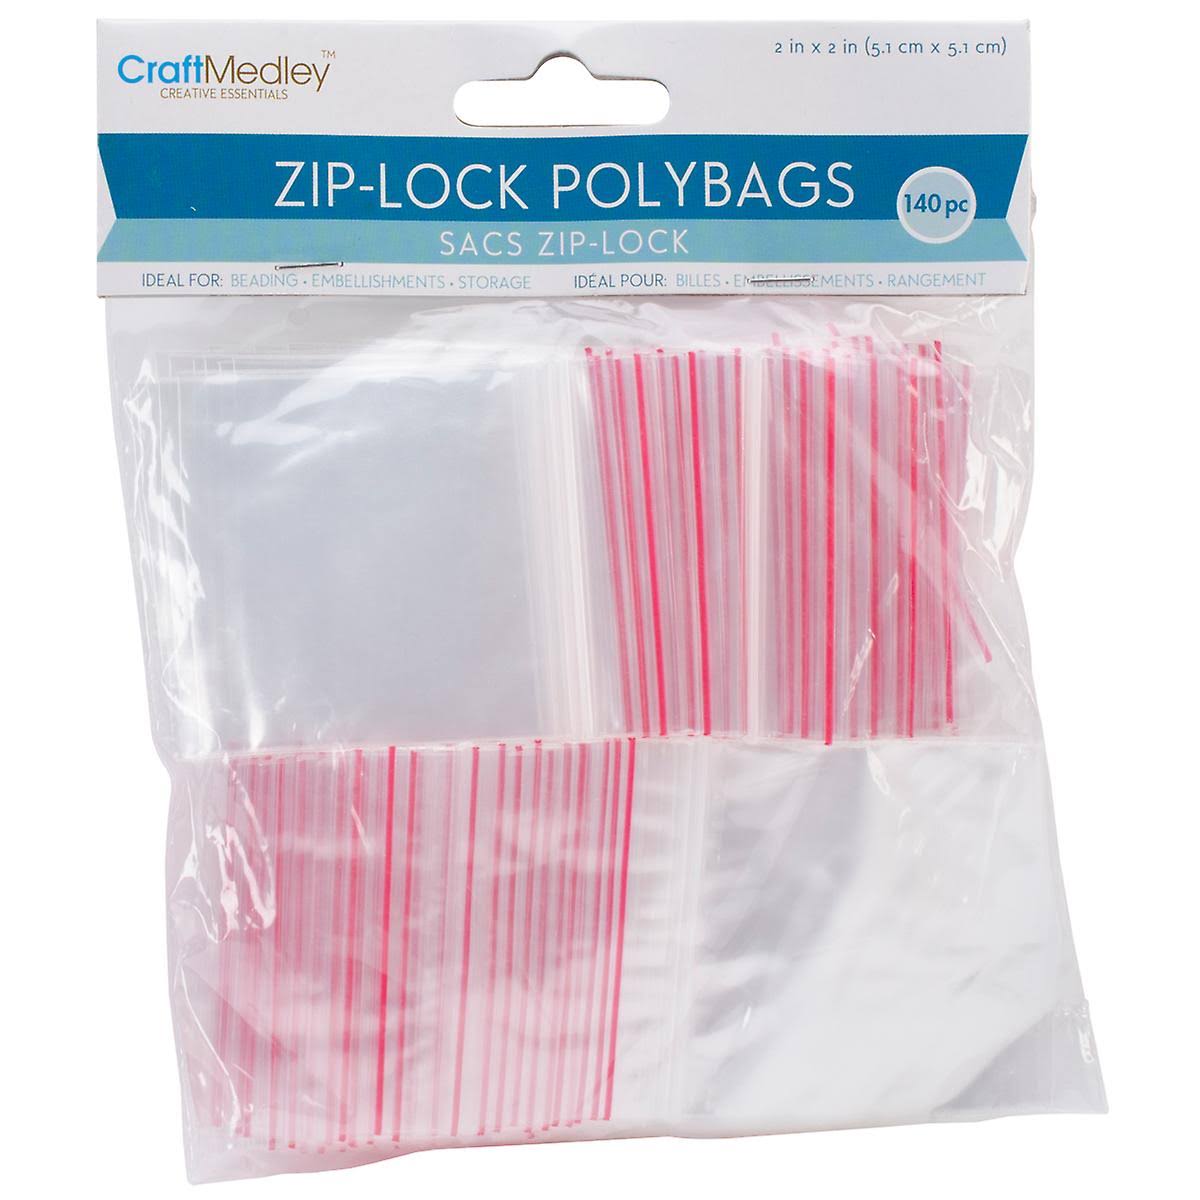 Craft Medley Zip-Lock Bags - 2"x2", 140pcs